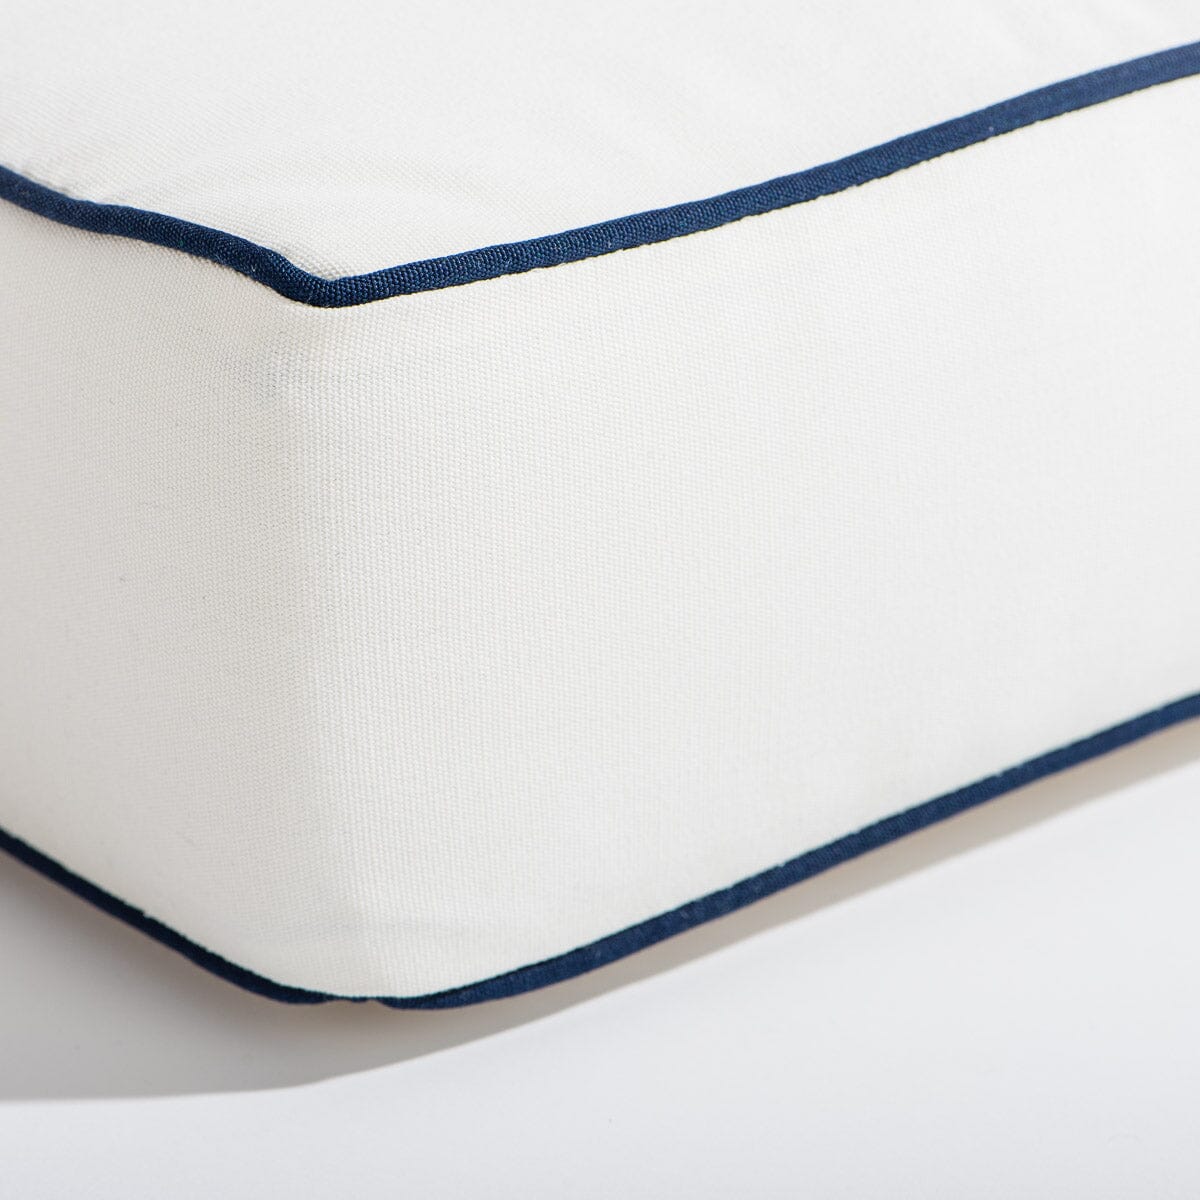 The Al Fresco Sun Lounger Cushion - Rivie White Al Fresco Sun Lounger Cushions Business & Pleasure Co 